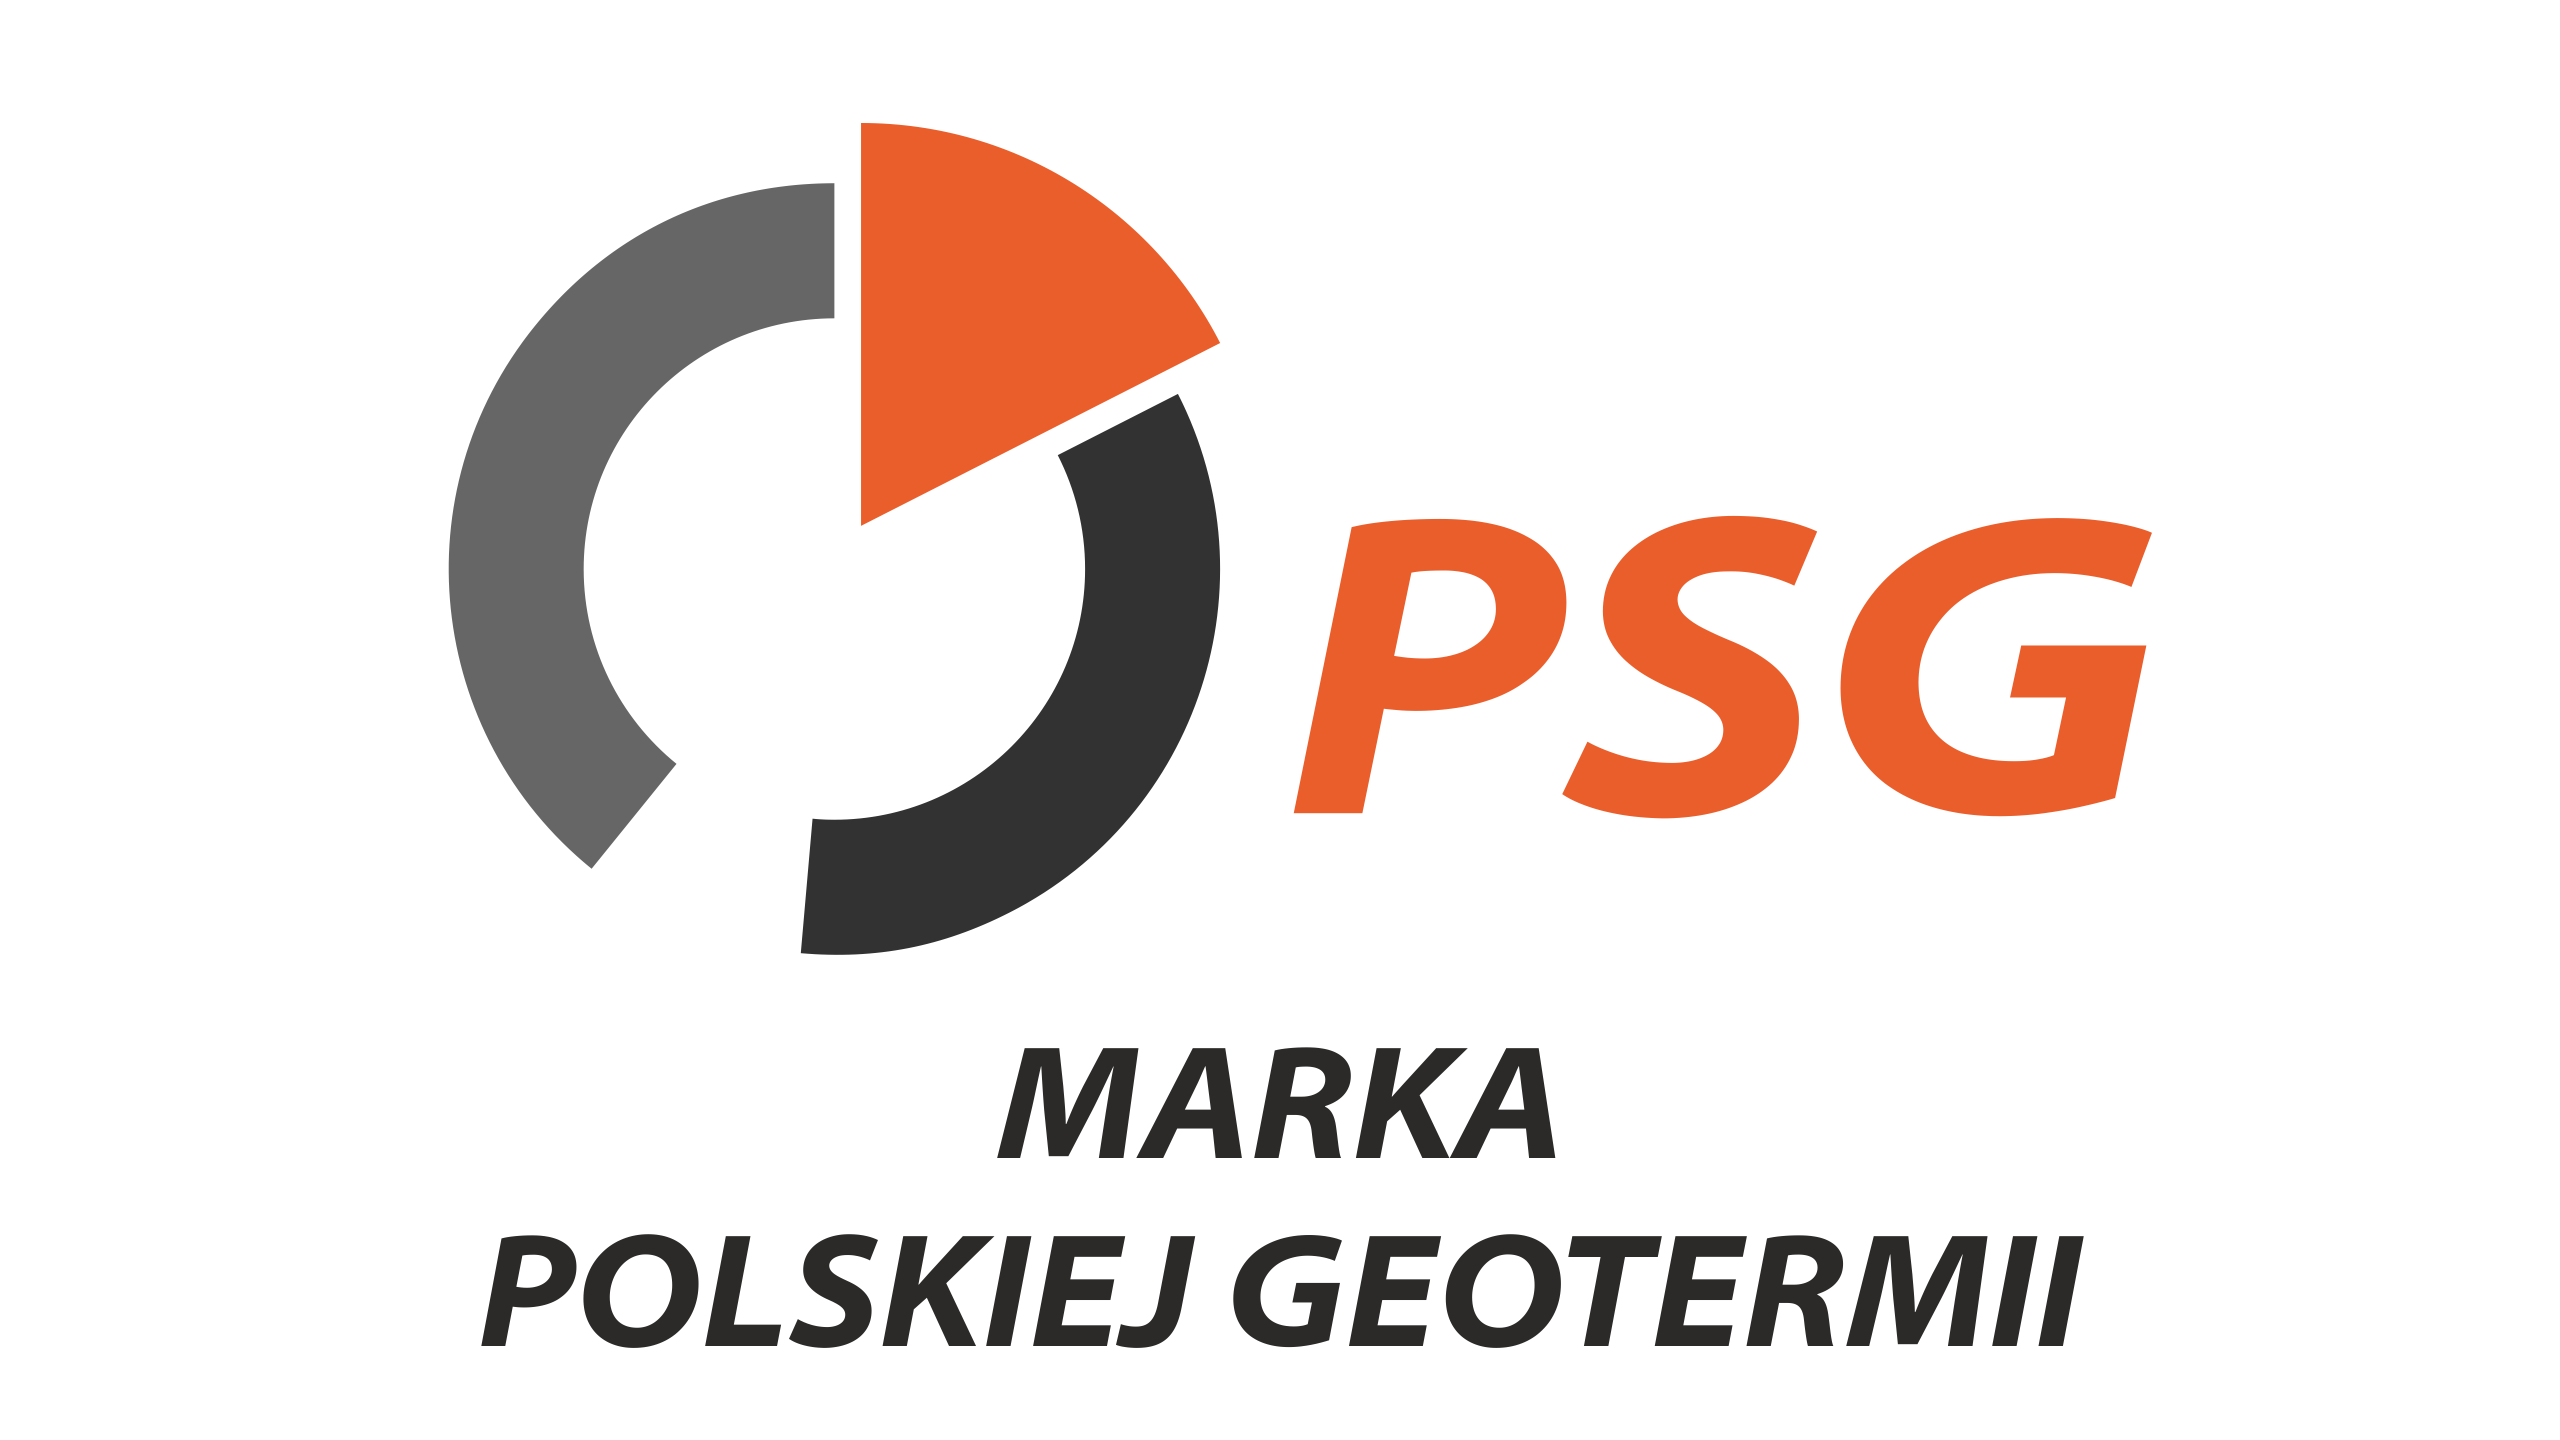 Polskie Stowarzyszenie Geotermiczne - marka polskiej geotermii